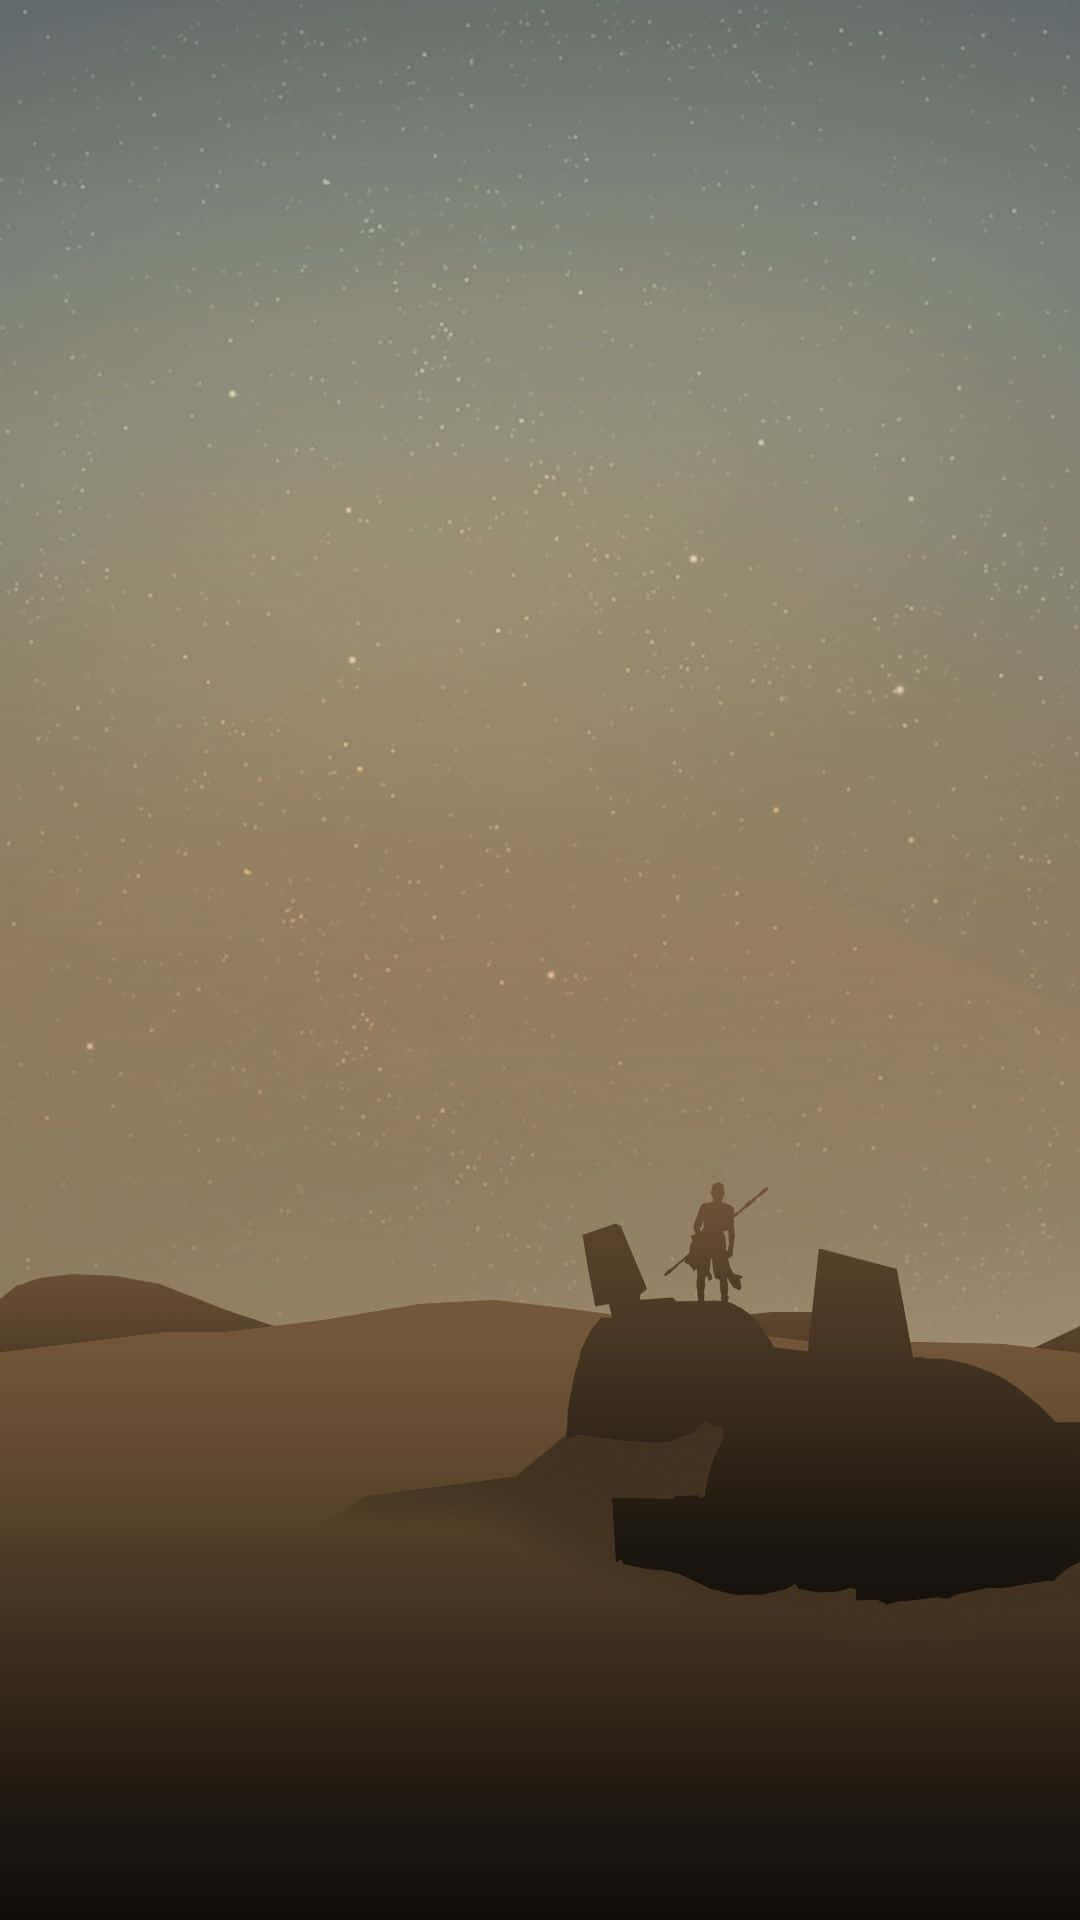 Desert landscape of Jakku with a crashed Star Destroyer and AT-AT walker Wallpaper